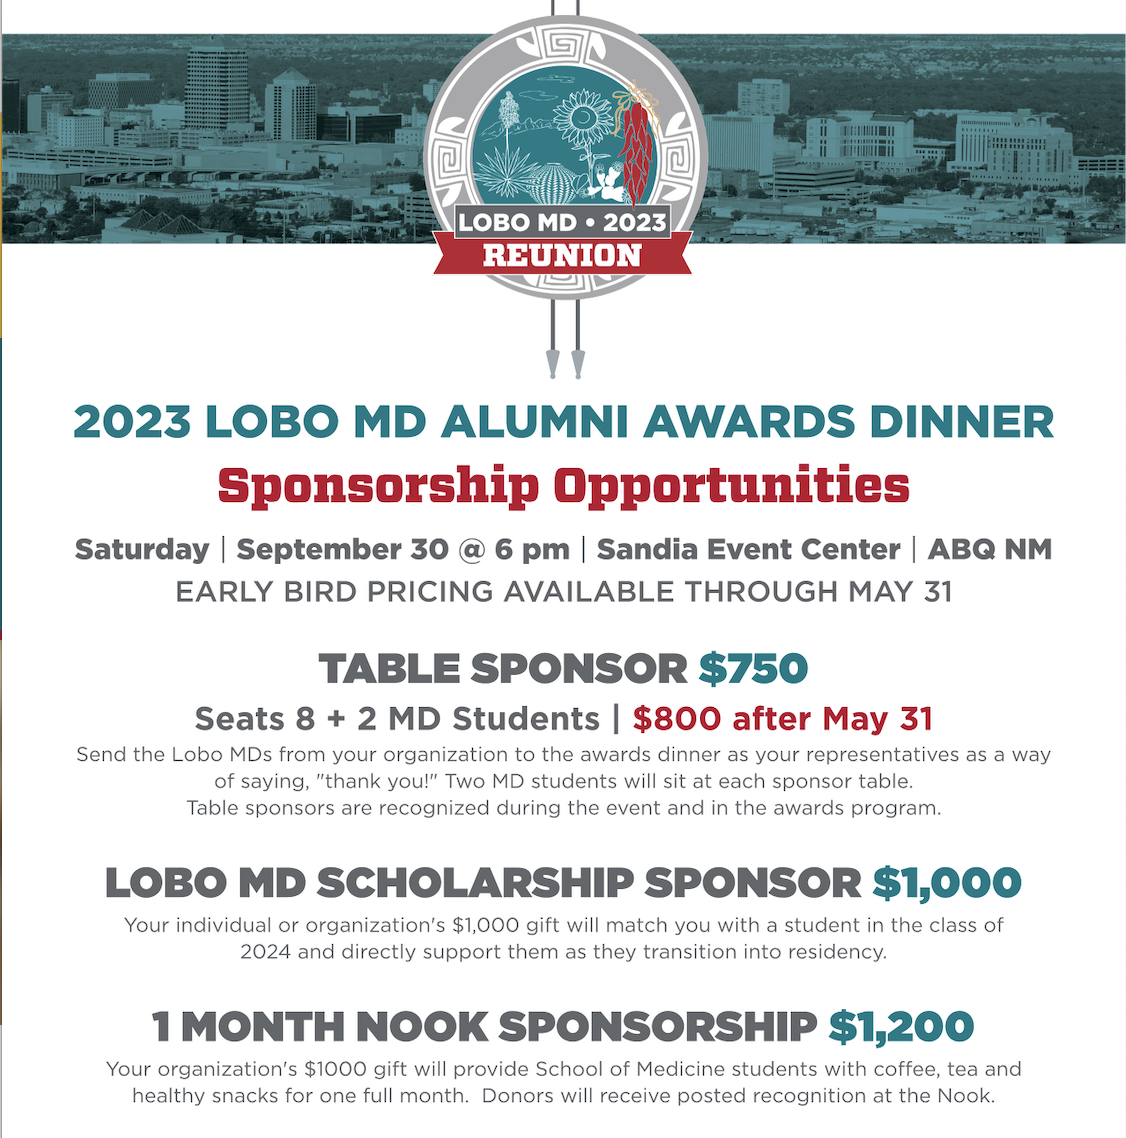 Sponsoringmöglichkeiten für das Lobo MD Reunion 2023